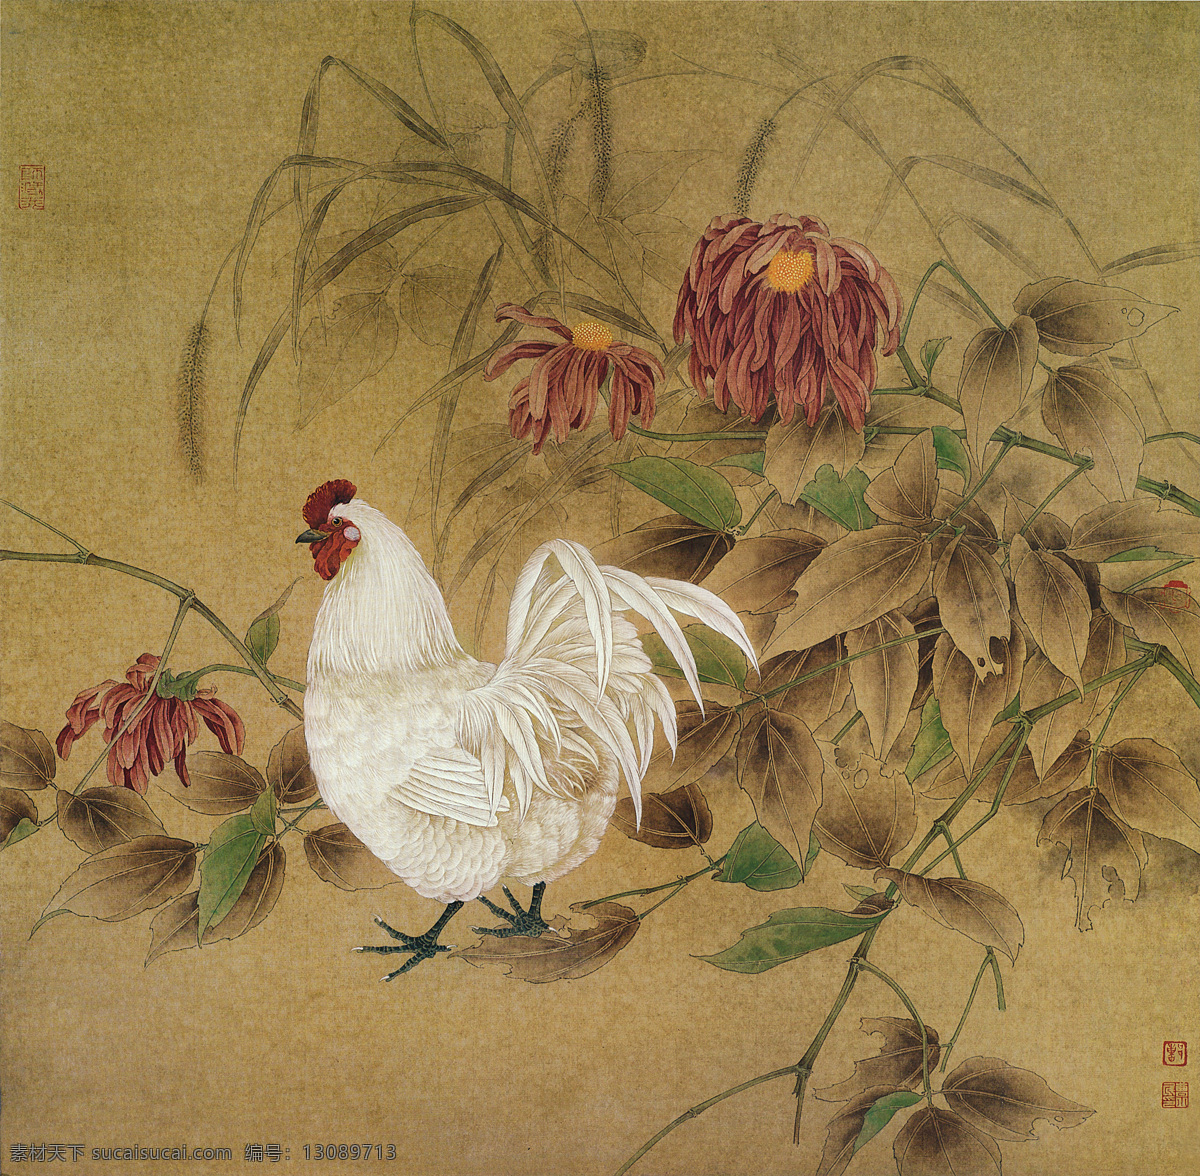 雄鸡国画图 雄鸡 国画 壁画 装饰画 花卉 中国风 装饰画专辑 文化艺术 绘画书法